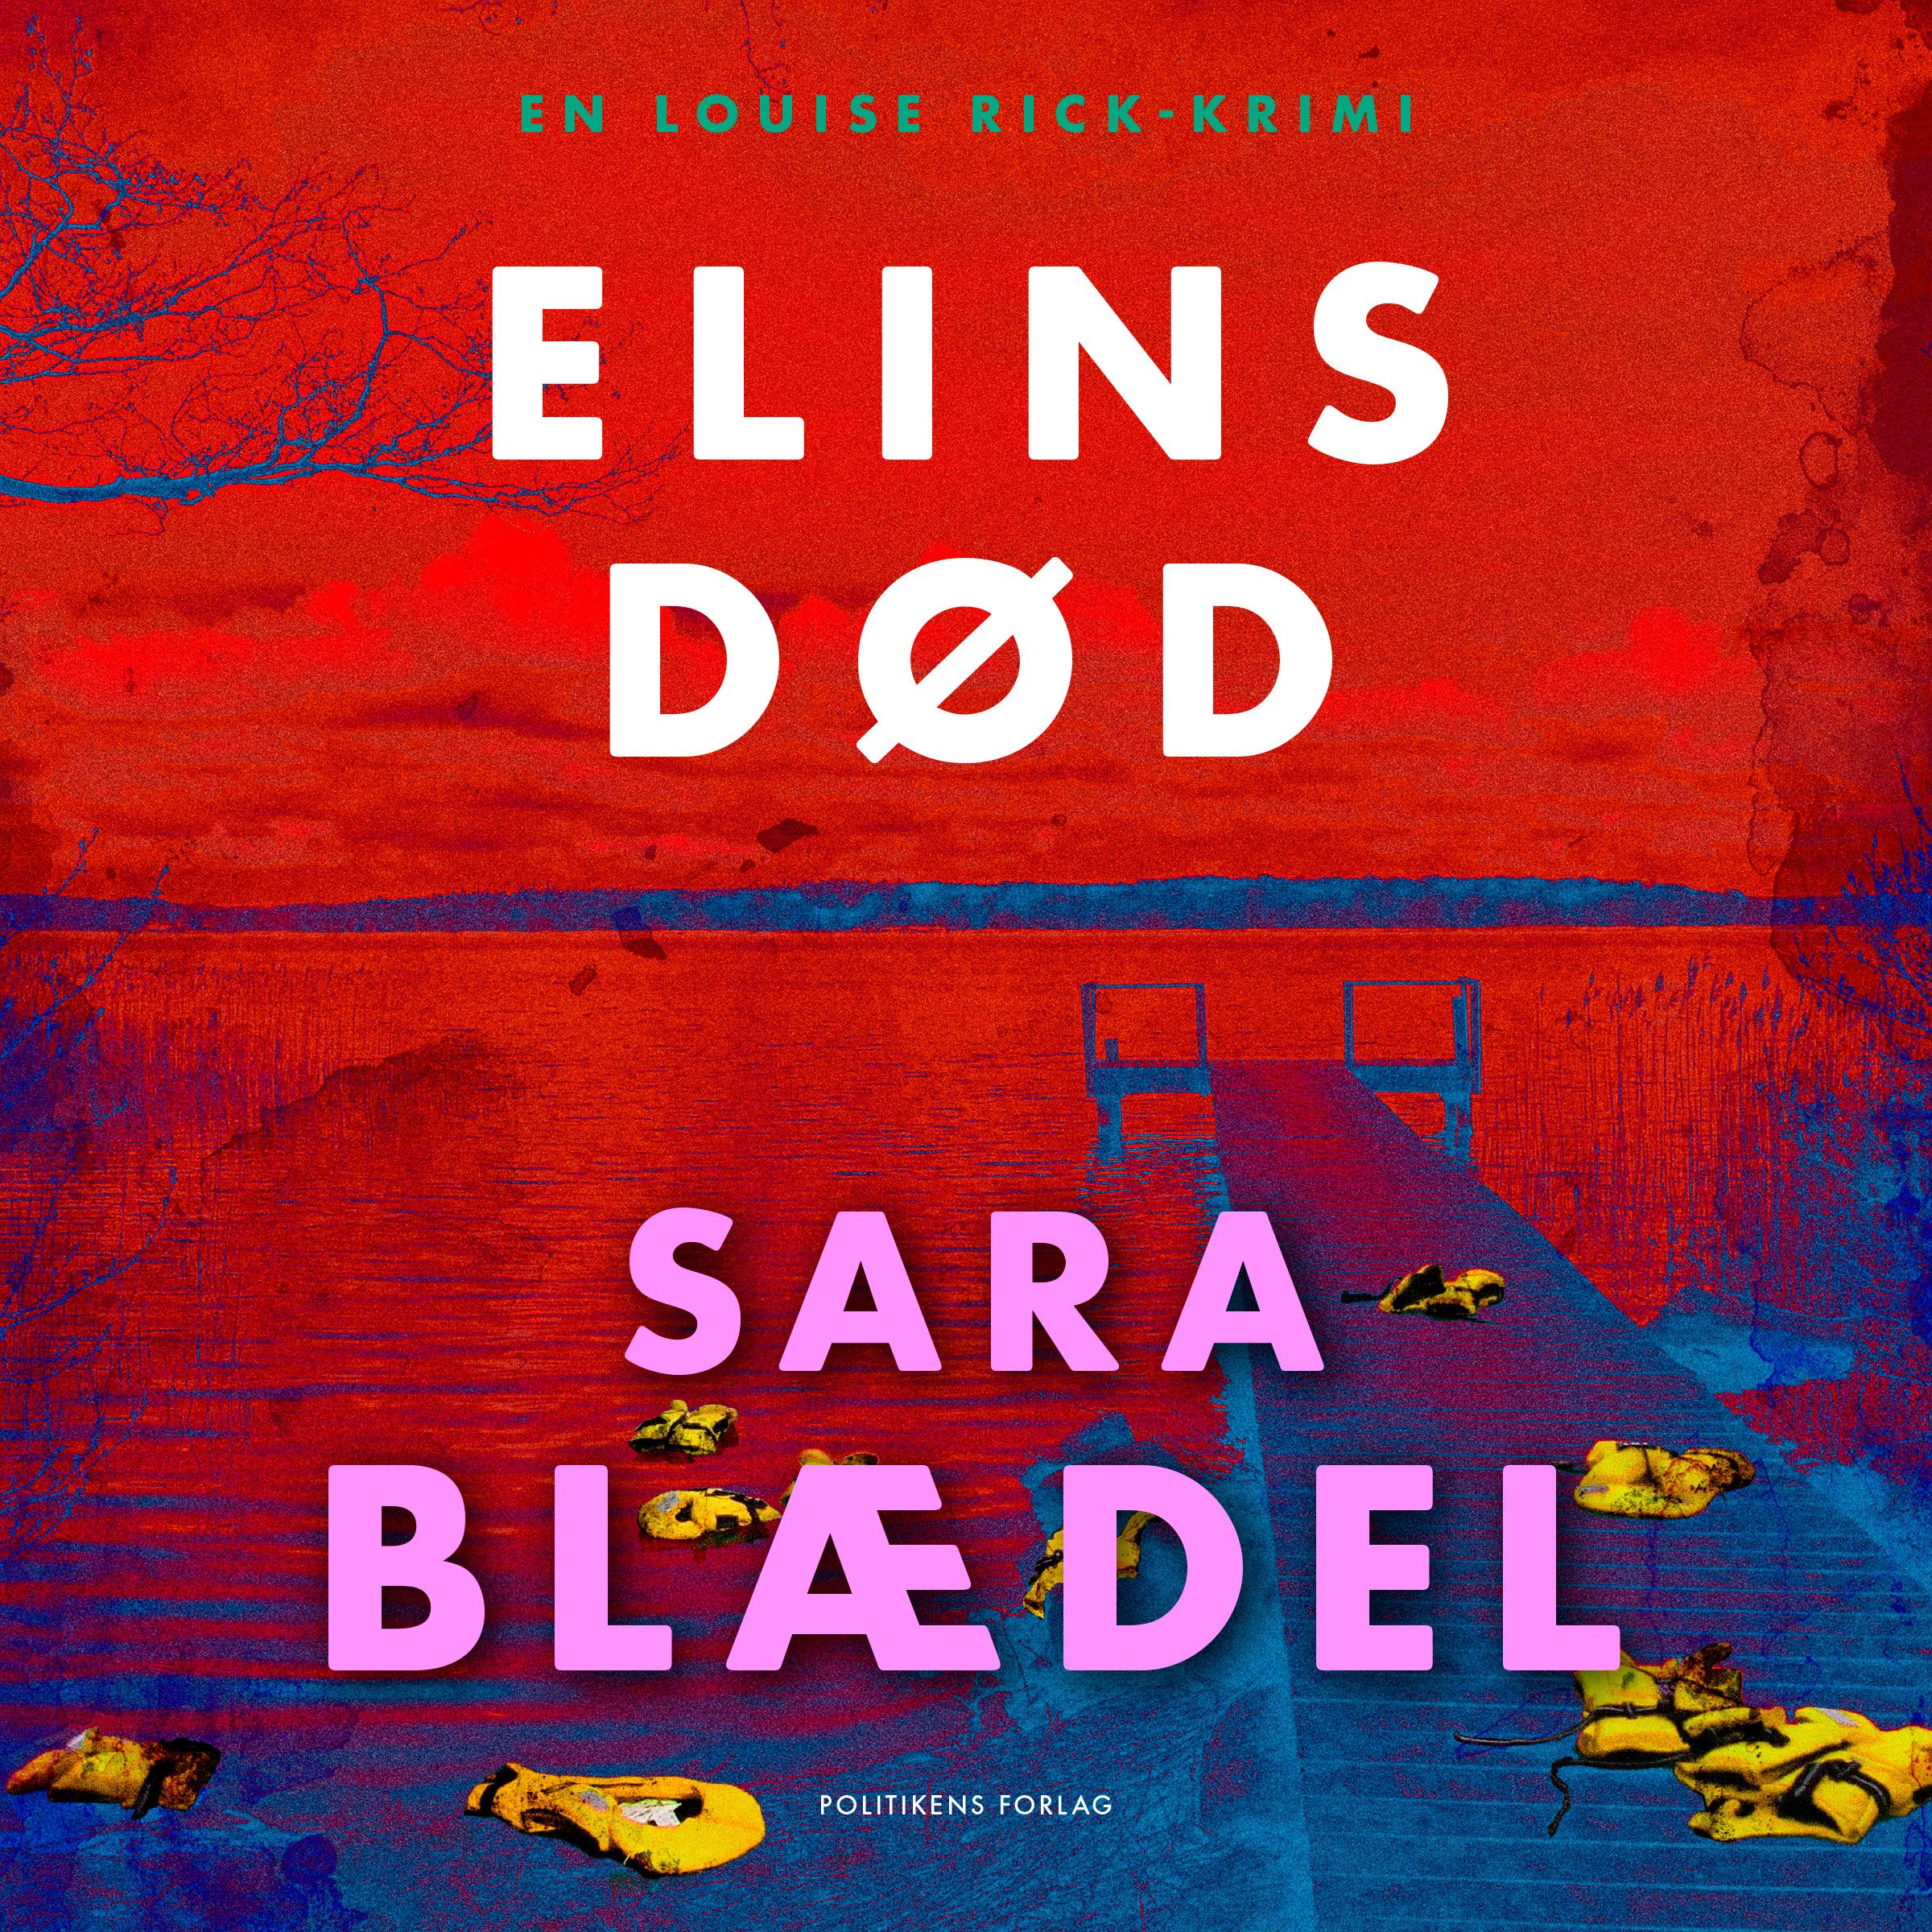 Elins død, audiobook by Sara Blædel